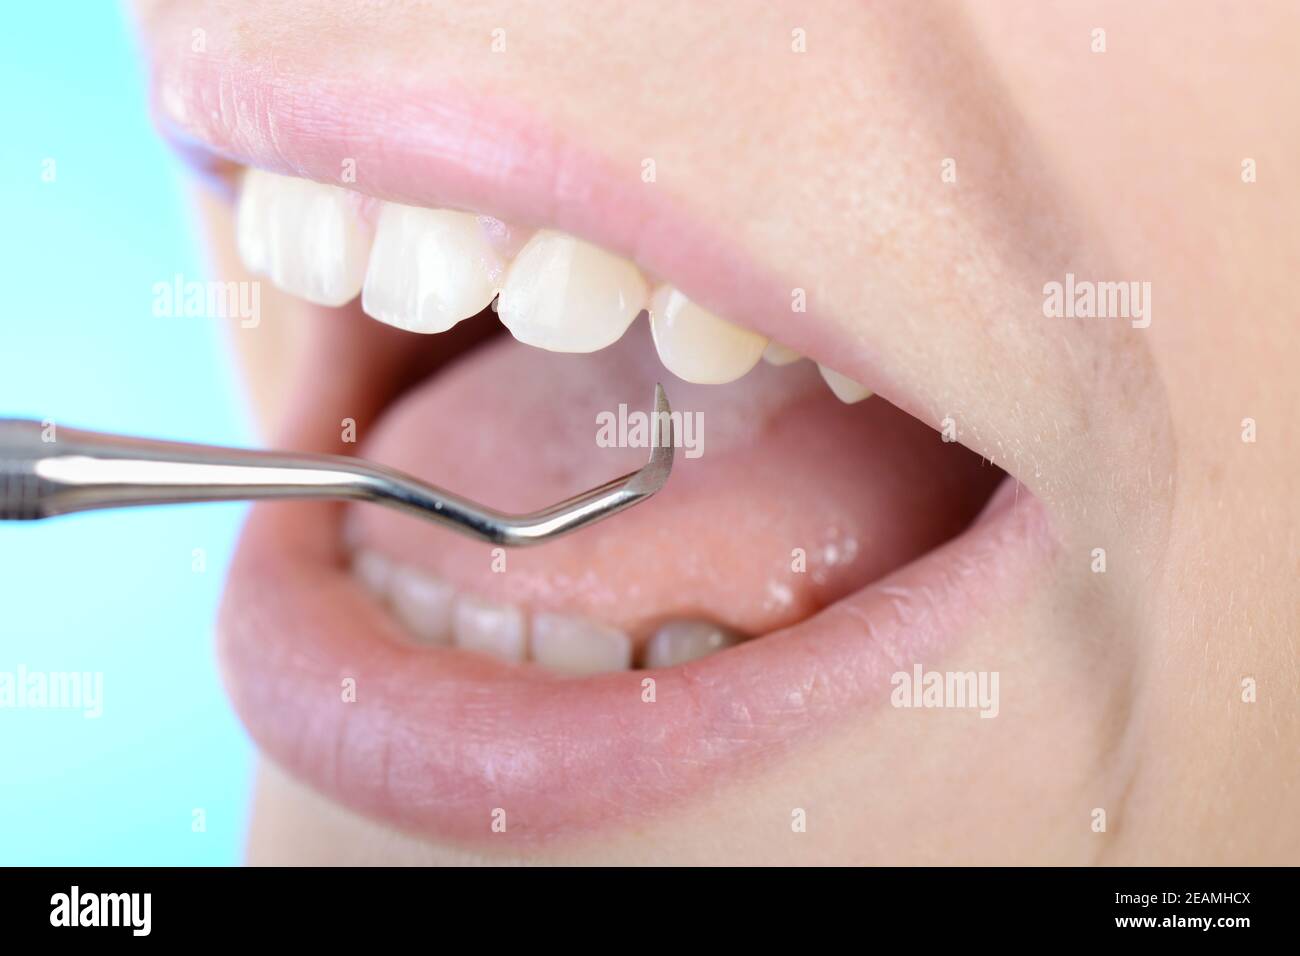 Zahnbehandlung durch Zahnarzt mit Haken Foto Stock